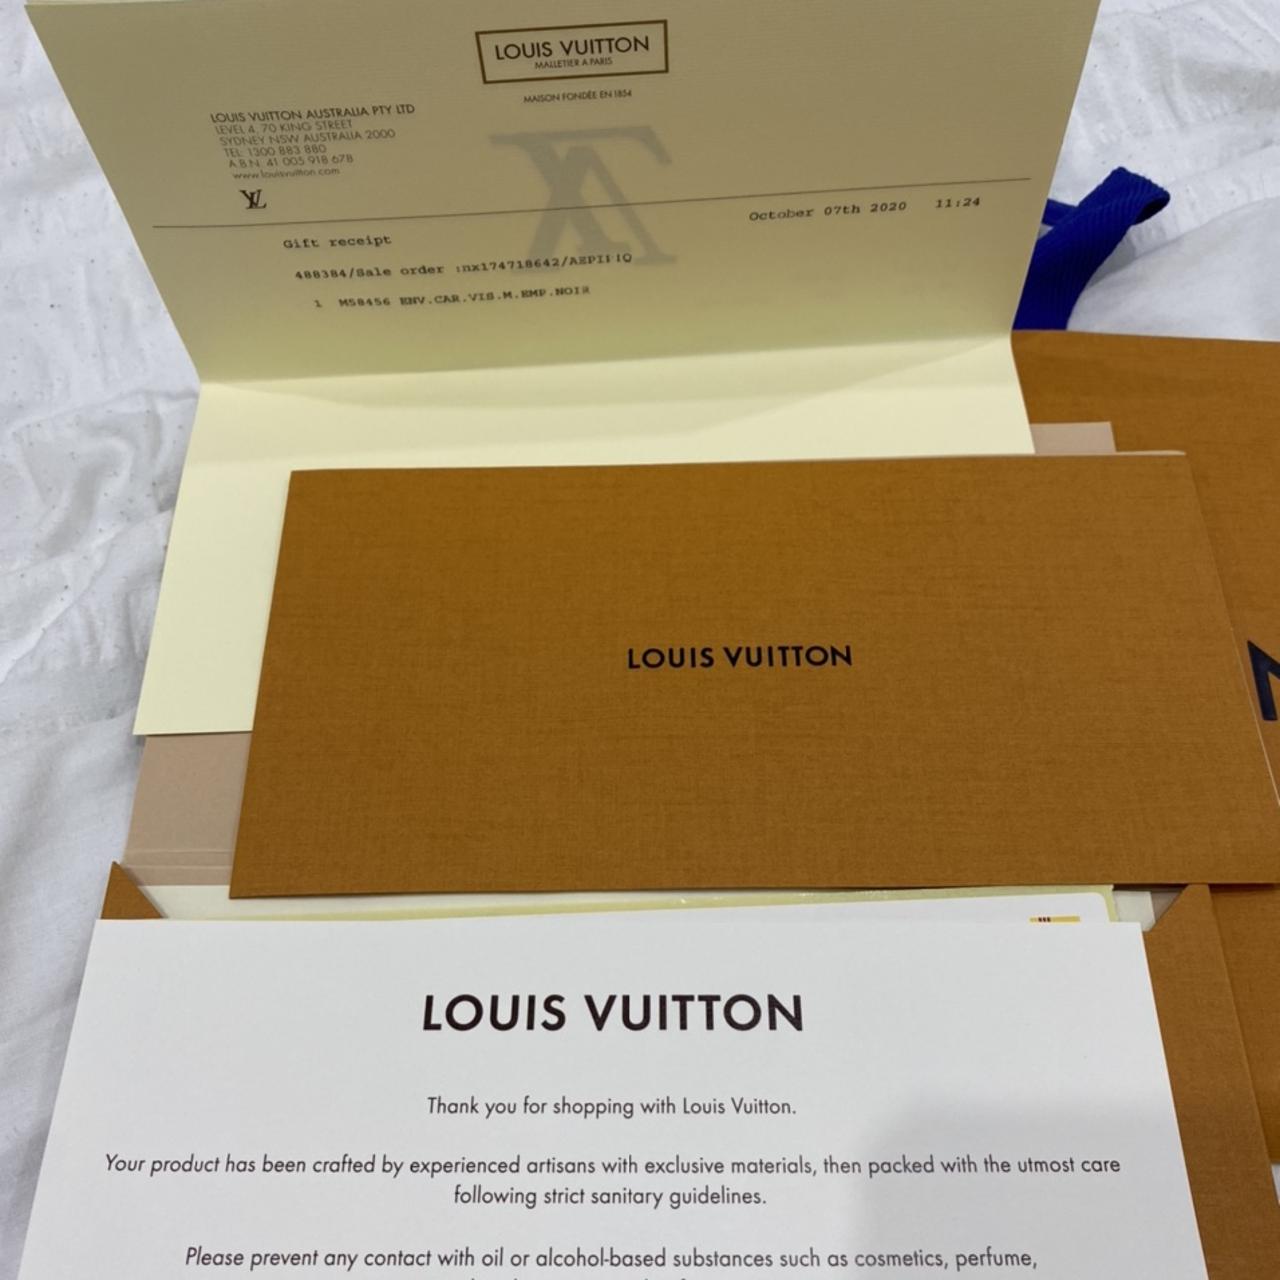 Louis Vuitton VTG 90s Malletiera Paris Envelope Dust - Depop